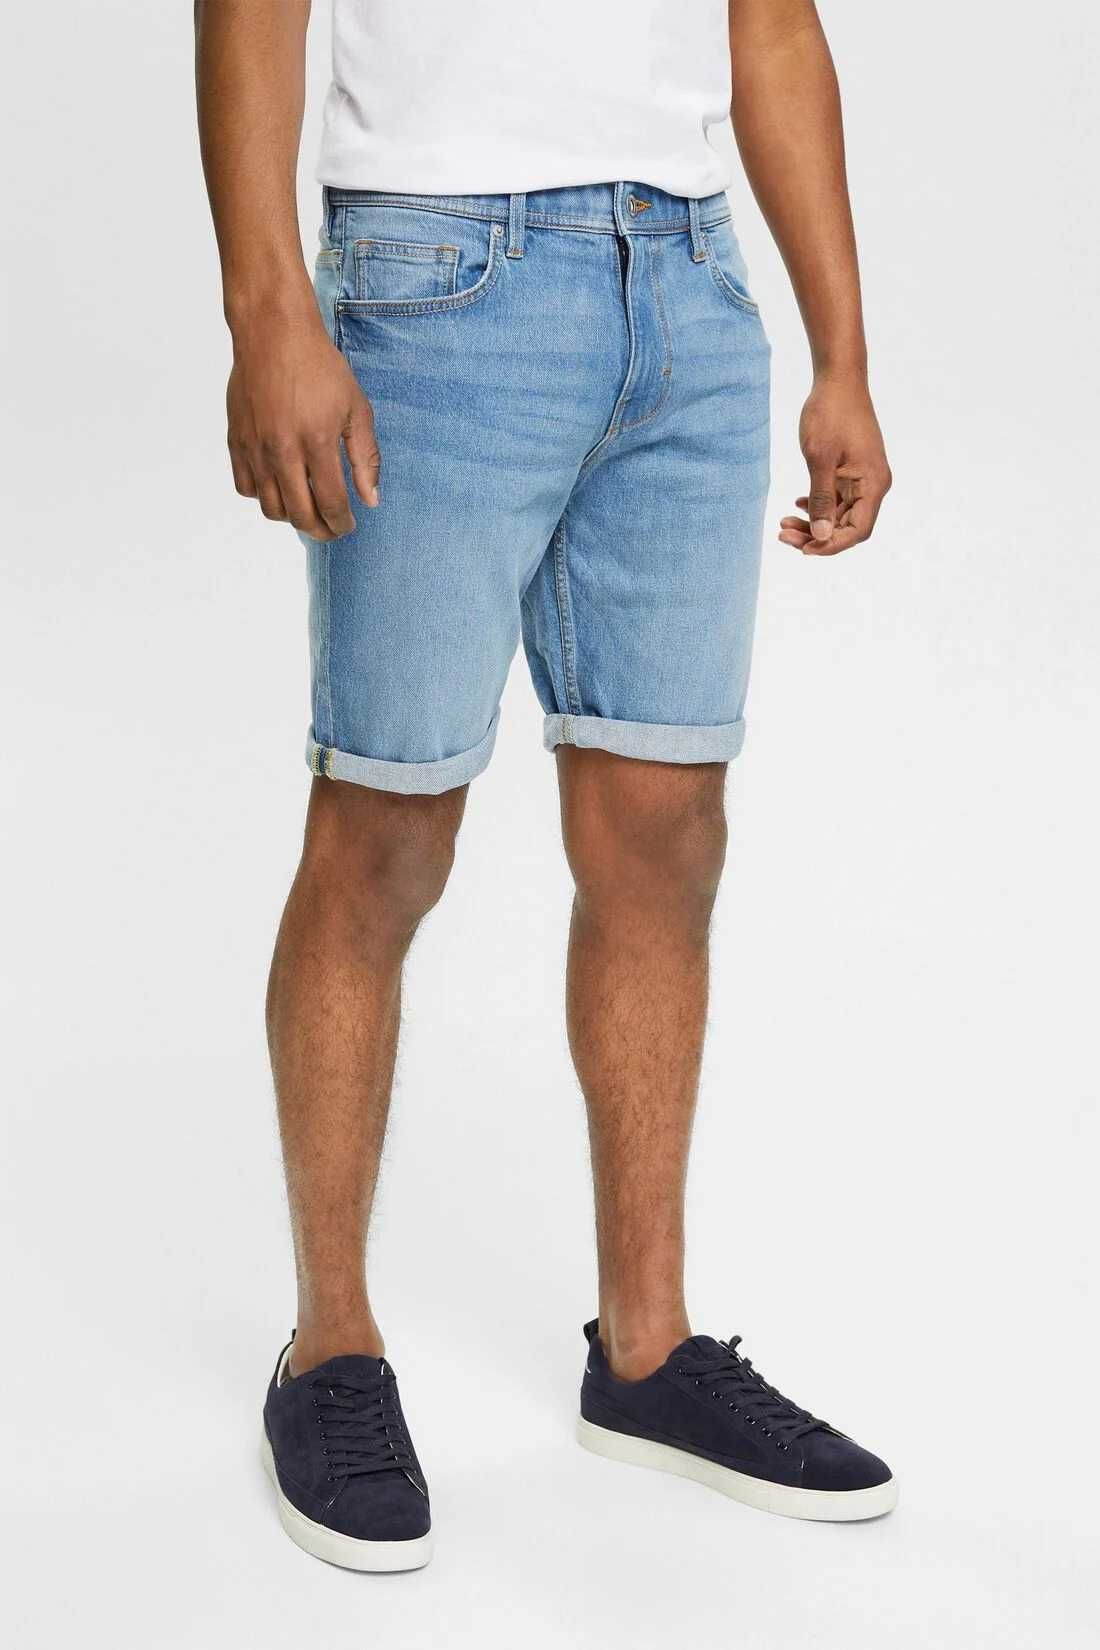 Nowe Esprit szorty krótkie dżinsowe spodenki spodnie jeansy W30